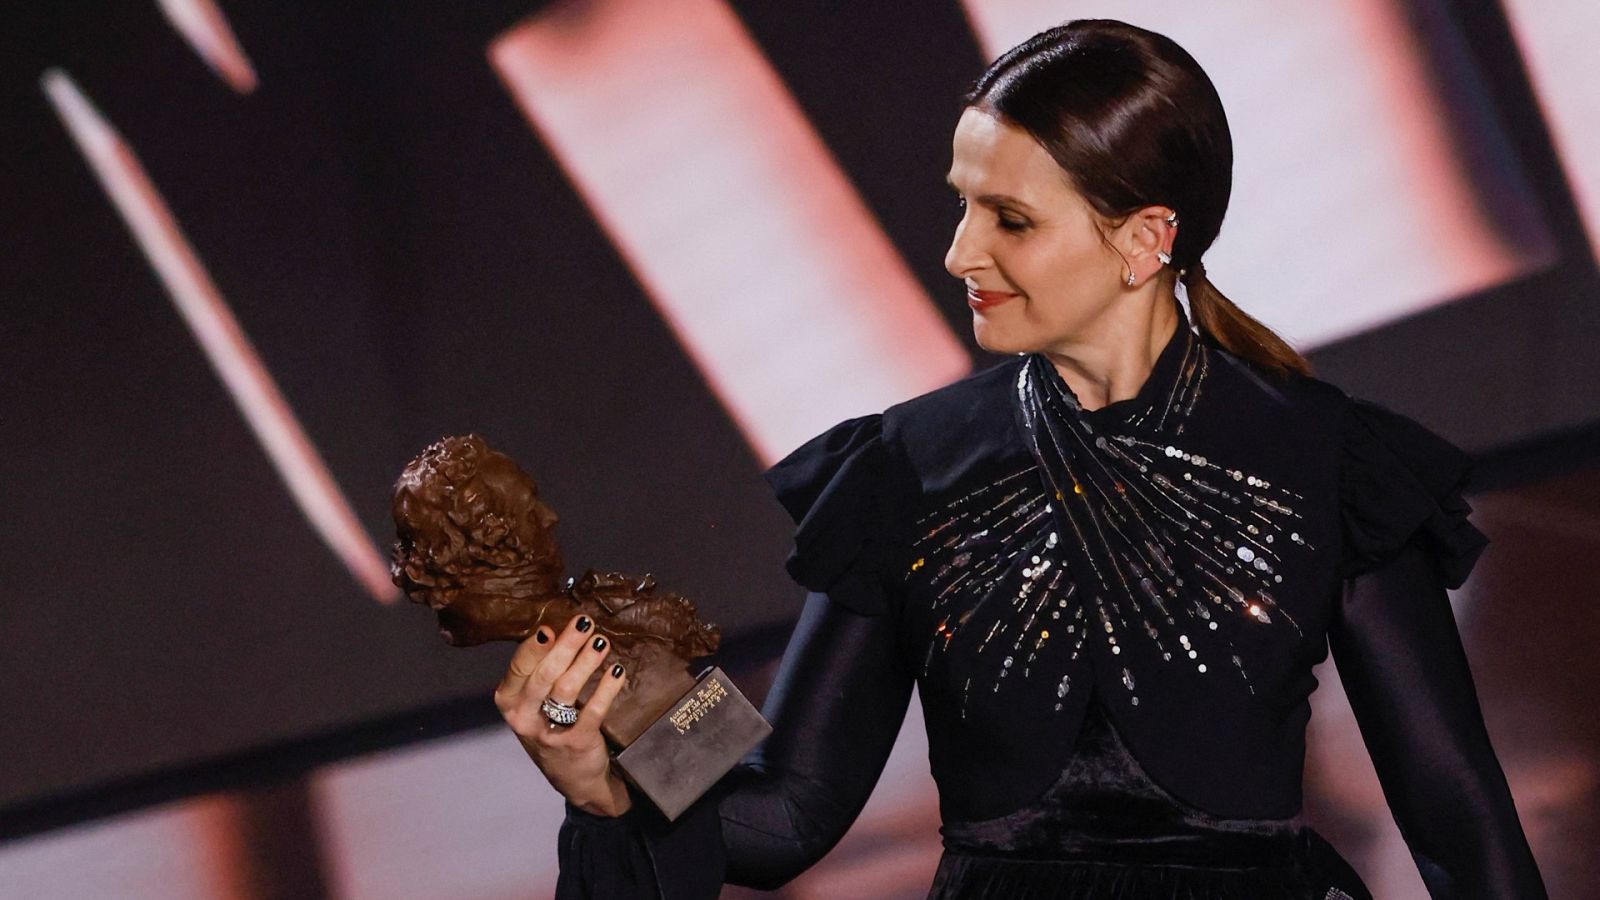 La actriz francesa Juliette Binoche recibe el Goya Internacional 2023 en la gala de los Goya 2023 y ha recordado la carrera del cineasta Carlos Saura, a quien la Academia ha dado el Goya de Honor en esta edición.